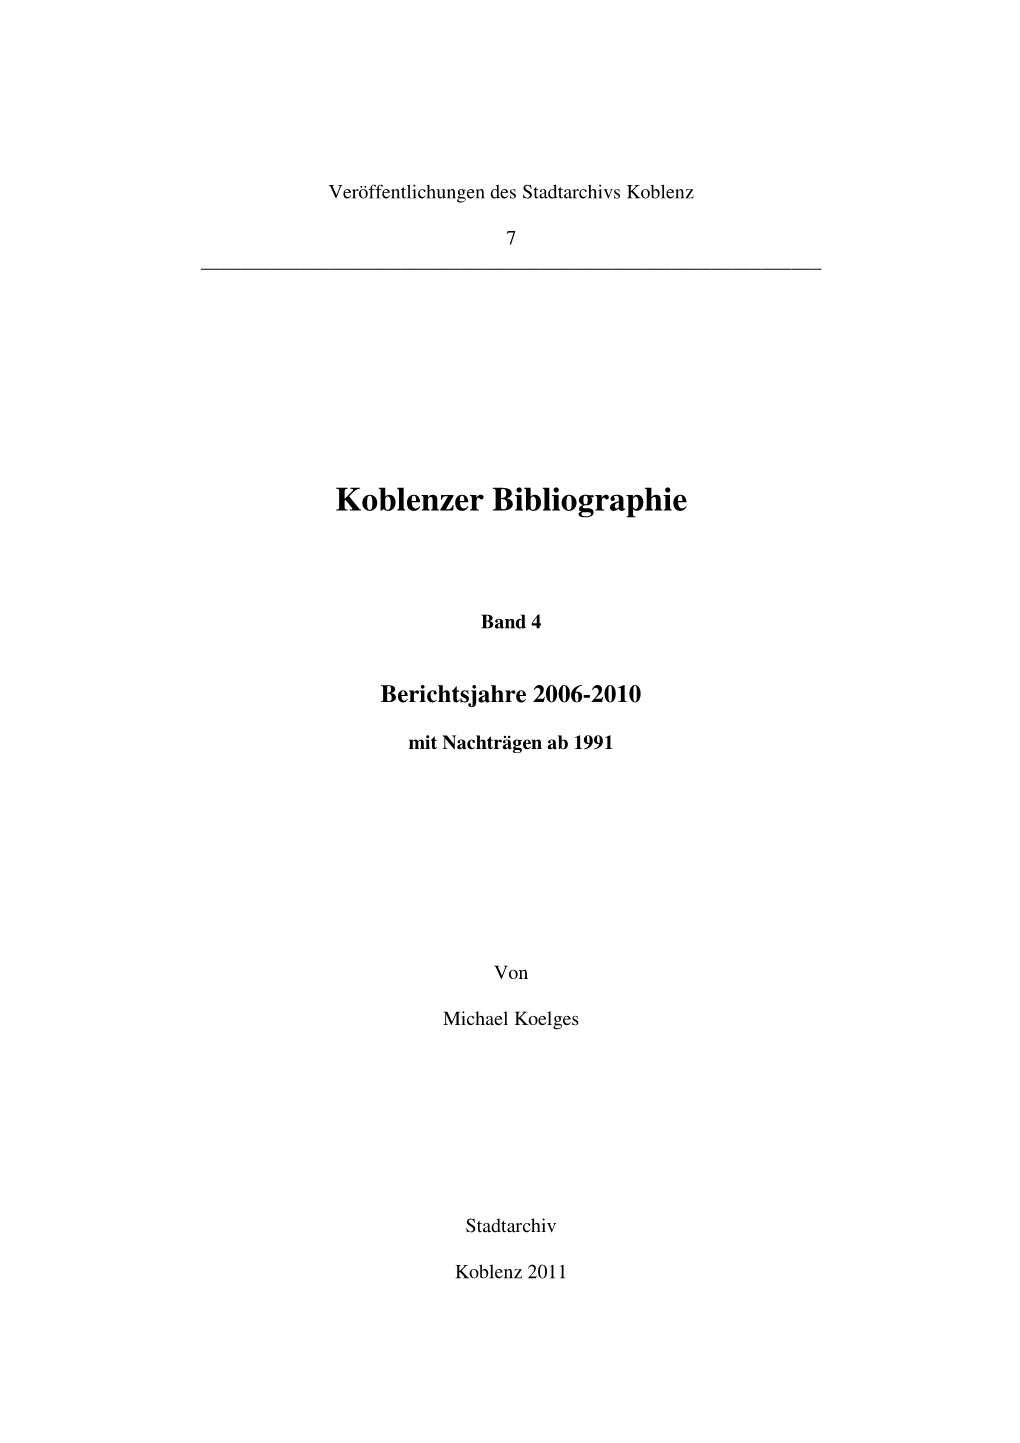 Koblenzer Bibliographie